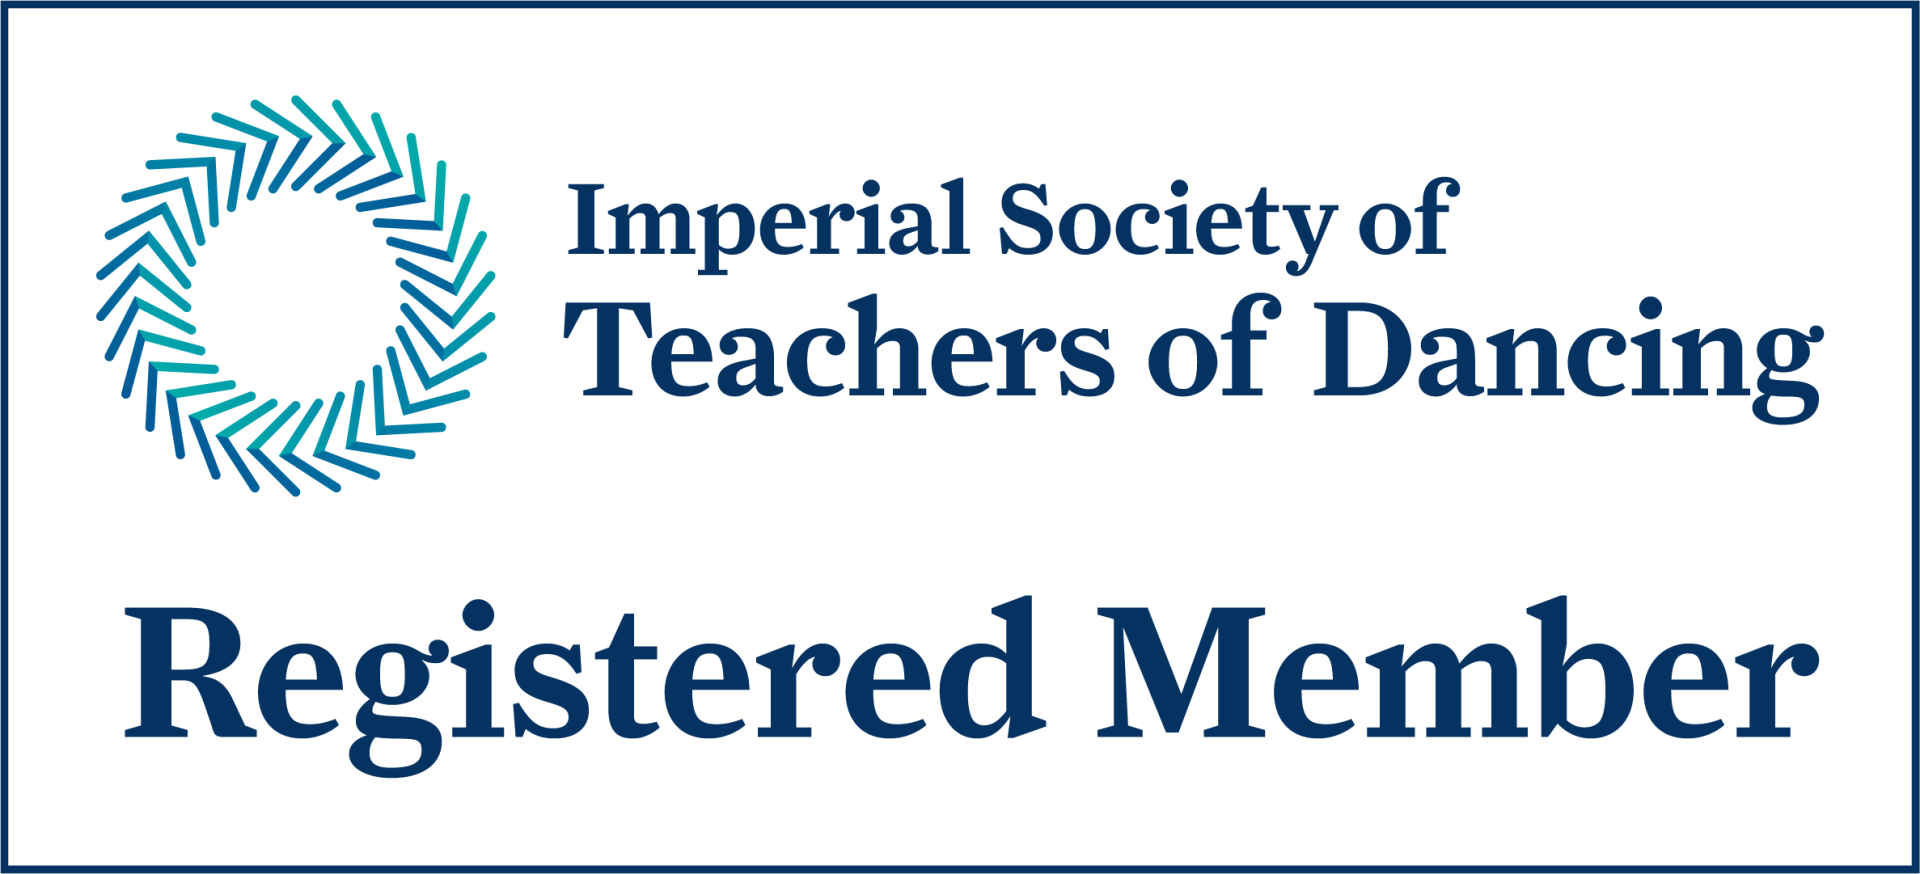 ISTD registered members